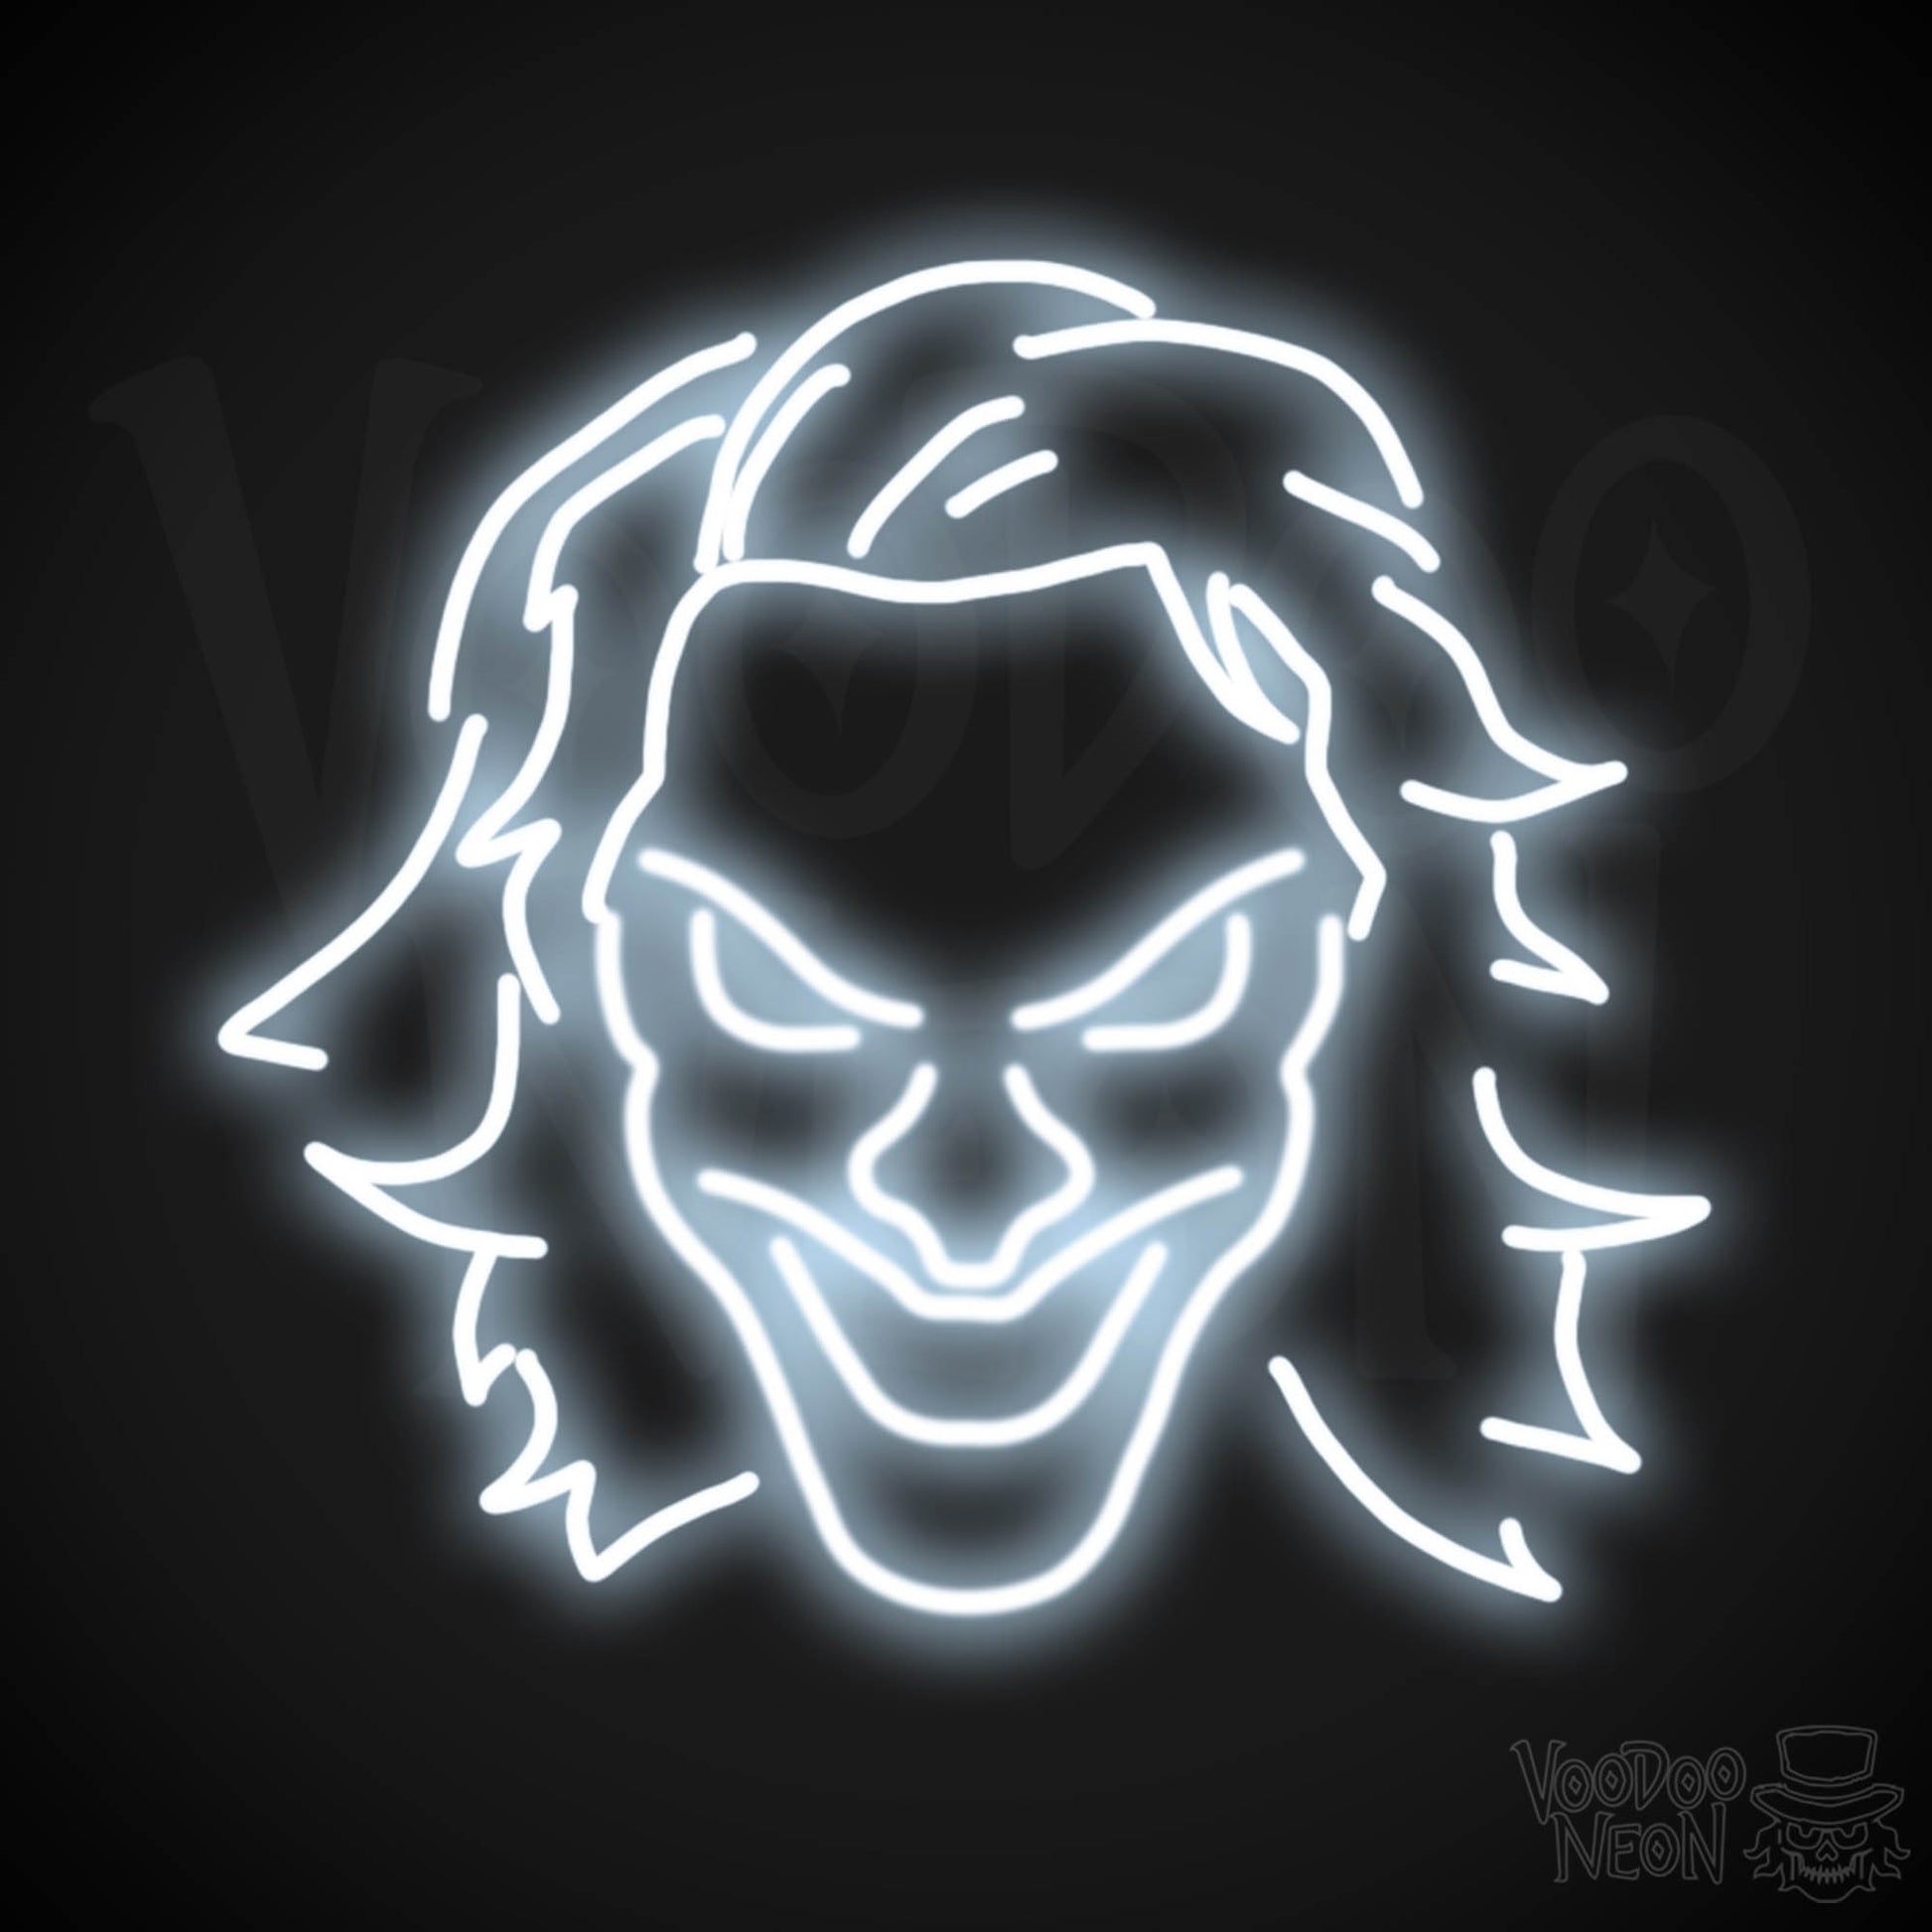 Joker Neon Sign - Neon Joker Sign - Joker LED Wall Art - Color Cool White